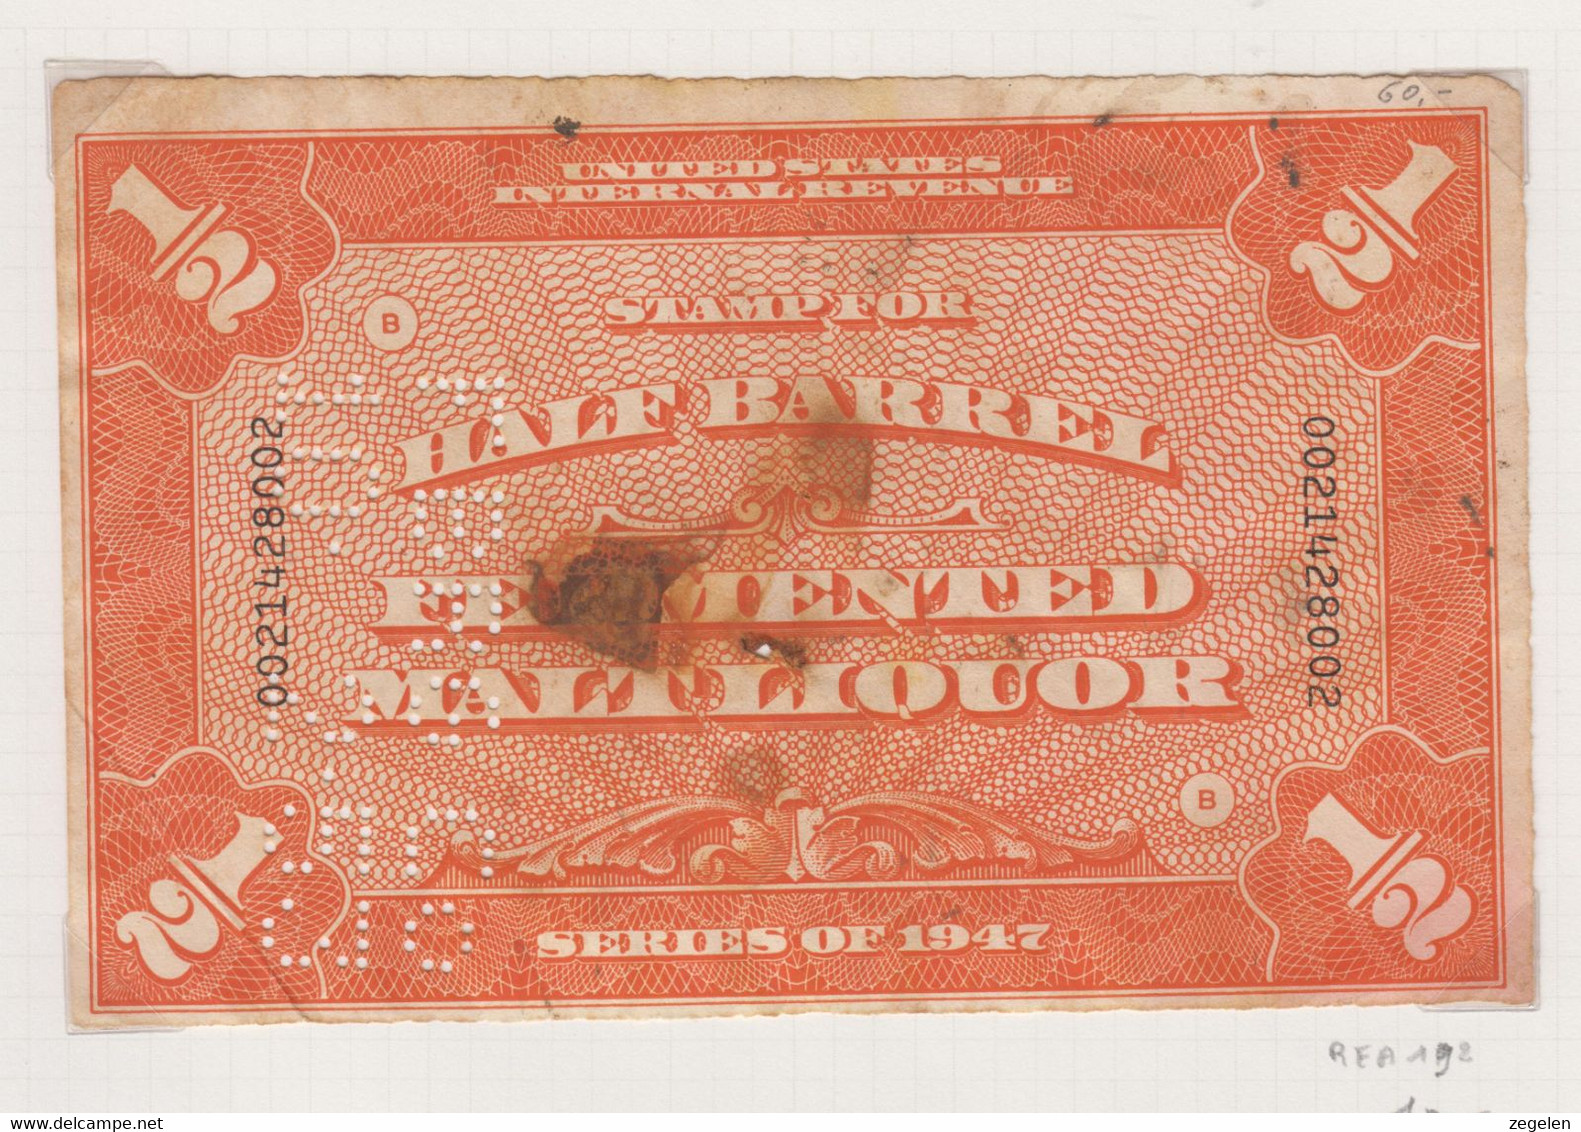 Verenigde Staten Scott Cataloog Revenue Stamps Beer Stamps REA192 - Revenues